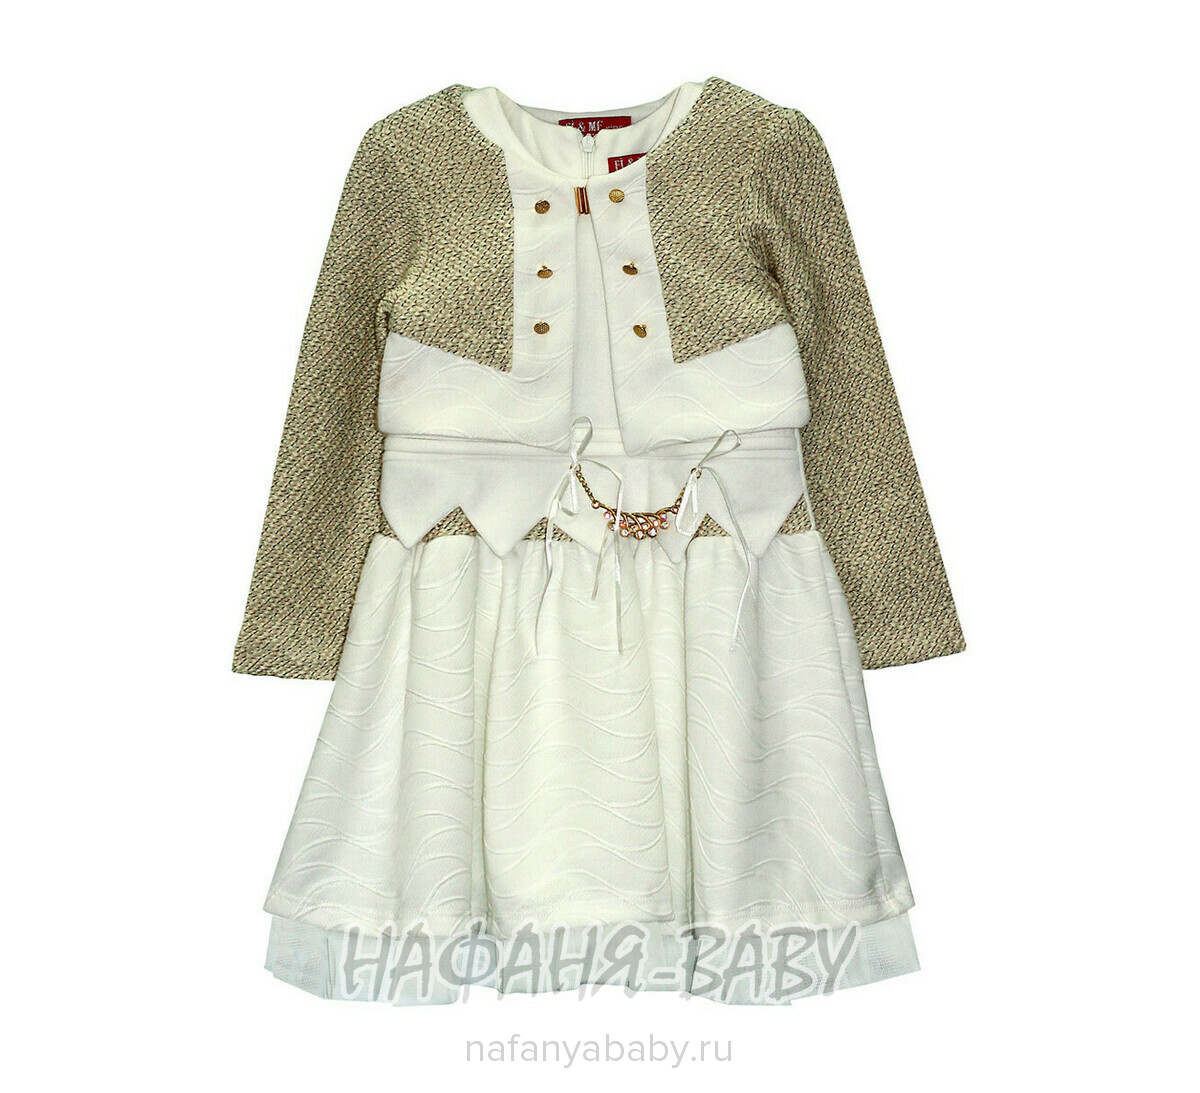 Детское нарядное платье+болеро FI & ME арт: 6002, 1-4 года, 5-9 лет, цвет платье-молочный, болеро-бежевый, оптом Турция